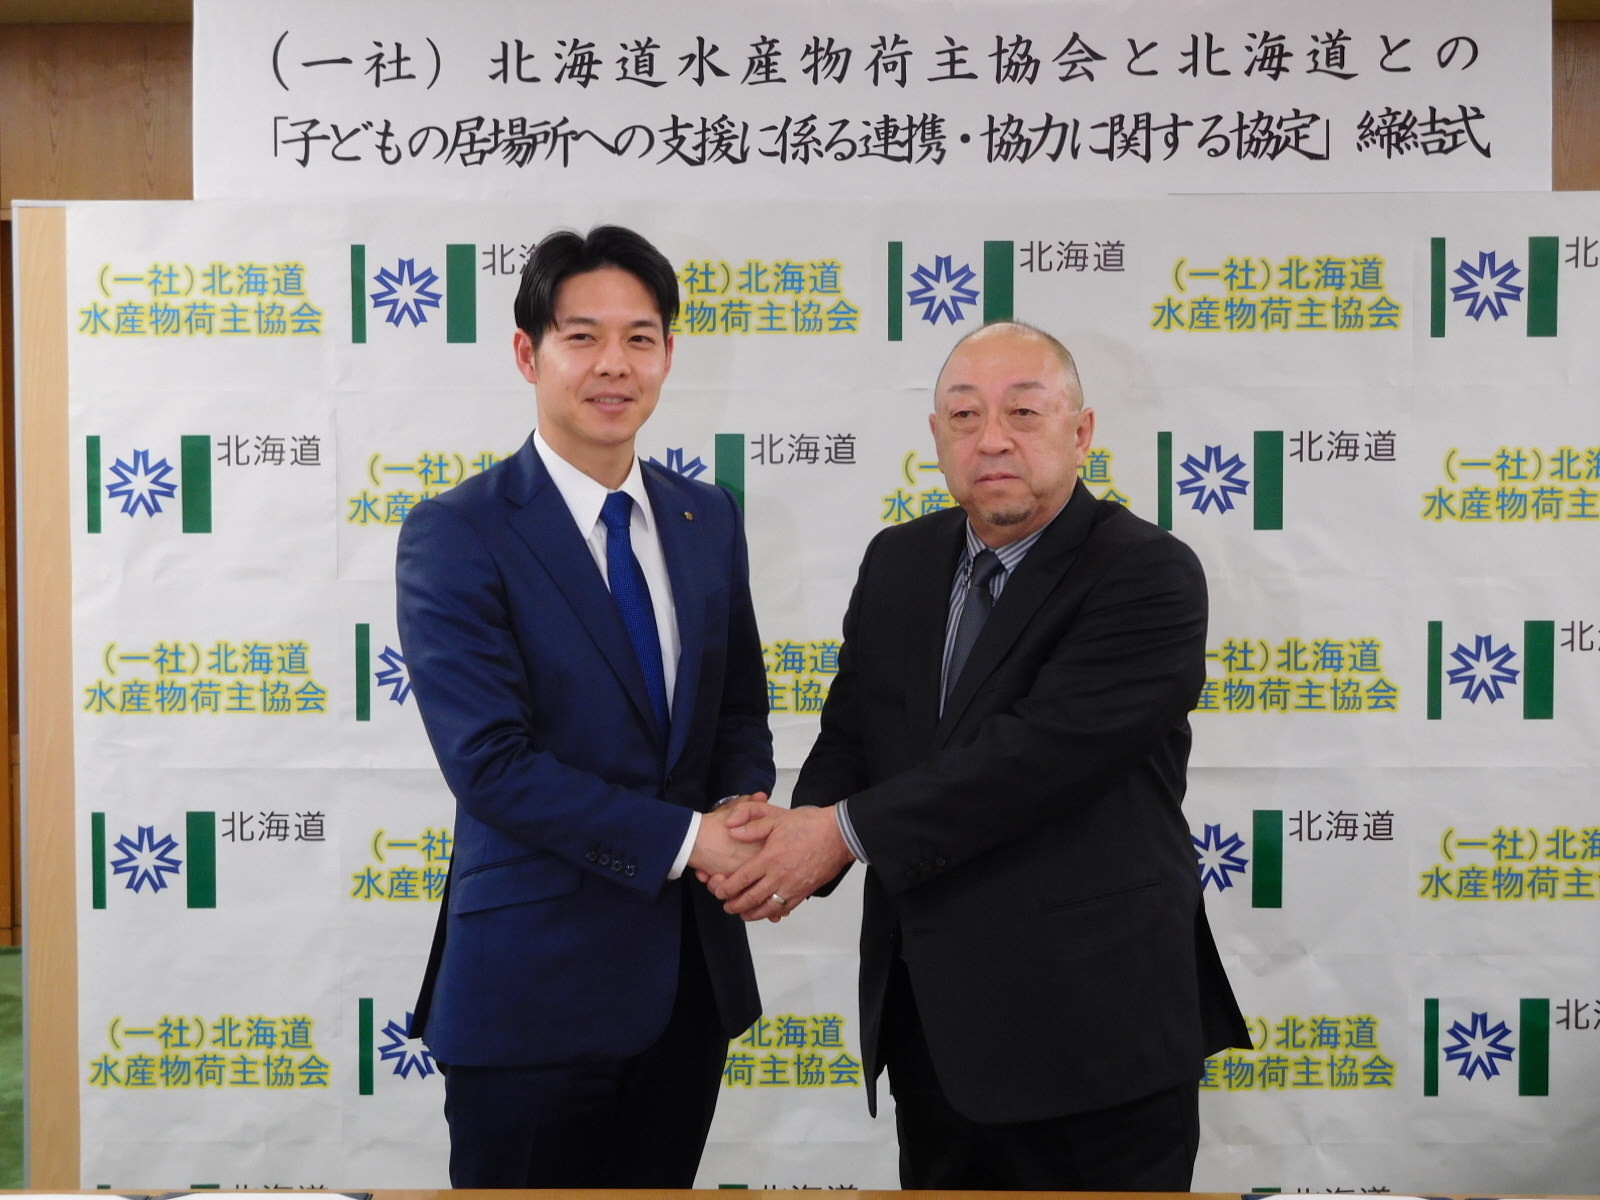 北海道水産物荷主協会と北海道の協定